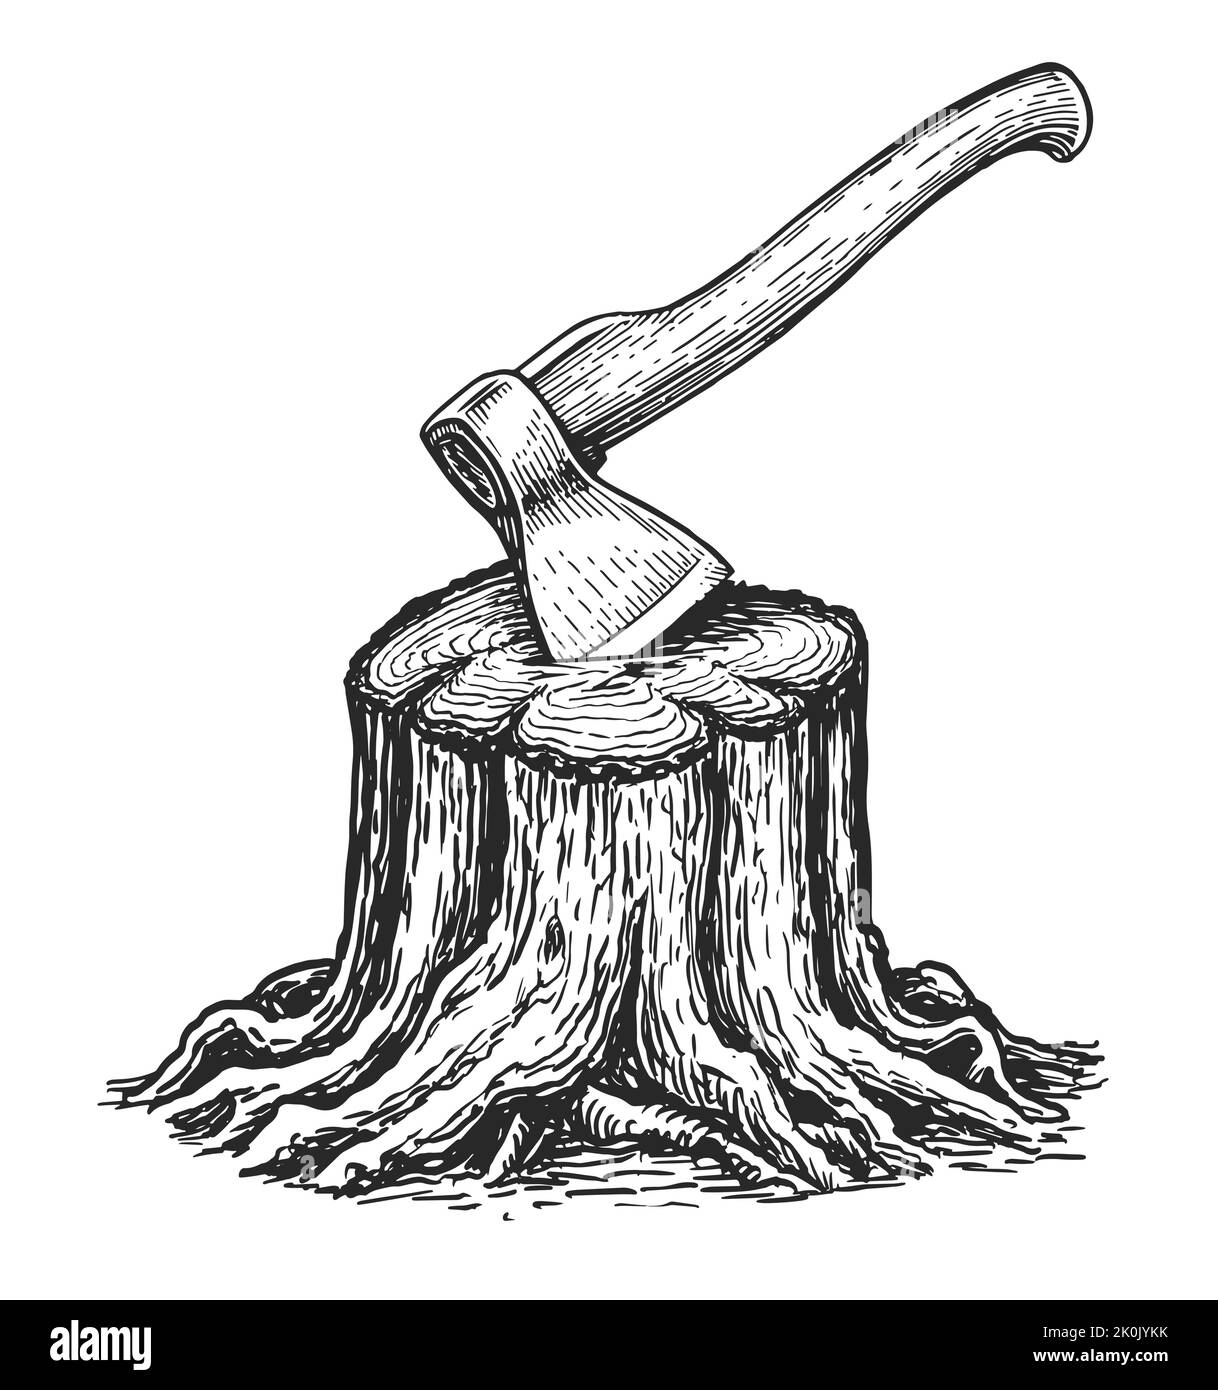 Moncone con disegno assiale bloccato. Taglio legno e tronchi. Utensile taglialegna per tritare legno. Falegnameria, legname naturale Illustrazione Vettoriale